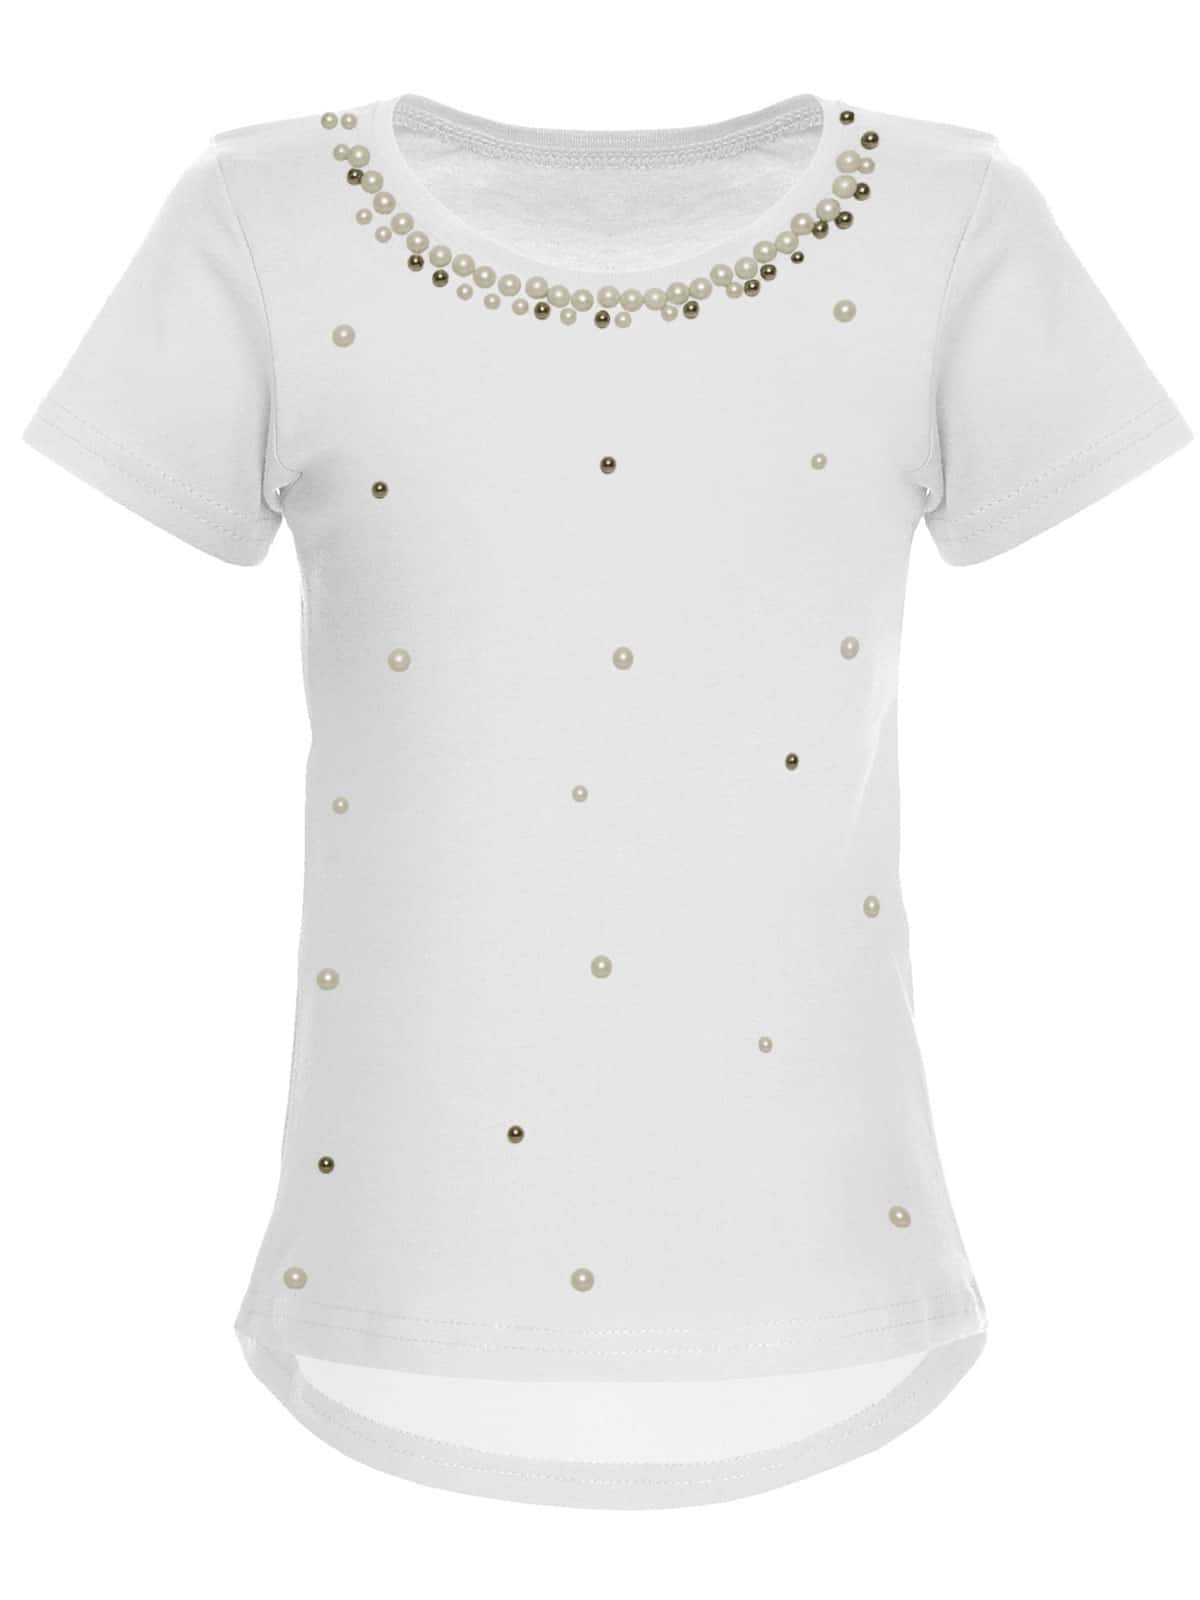 BEZLIT Mädchen T-Shirt mit Kunst-Perlen